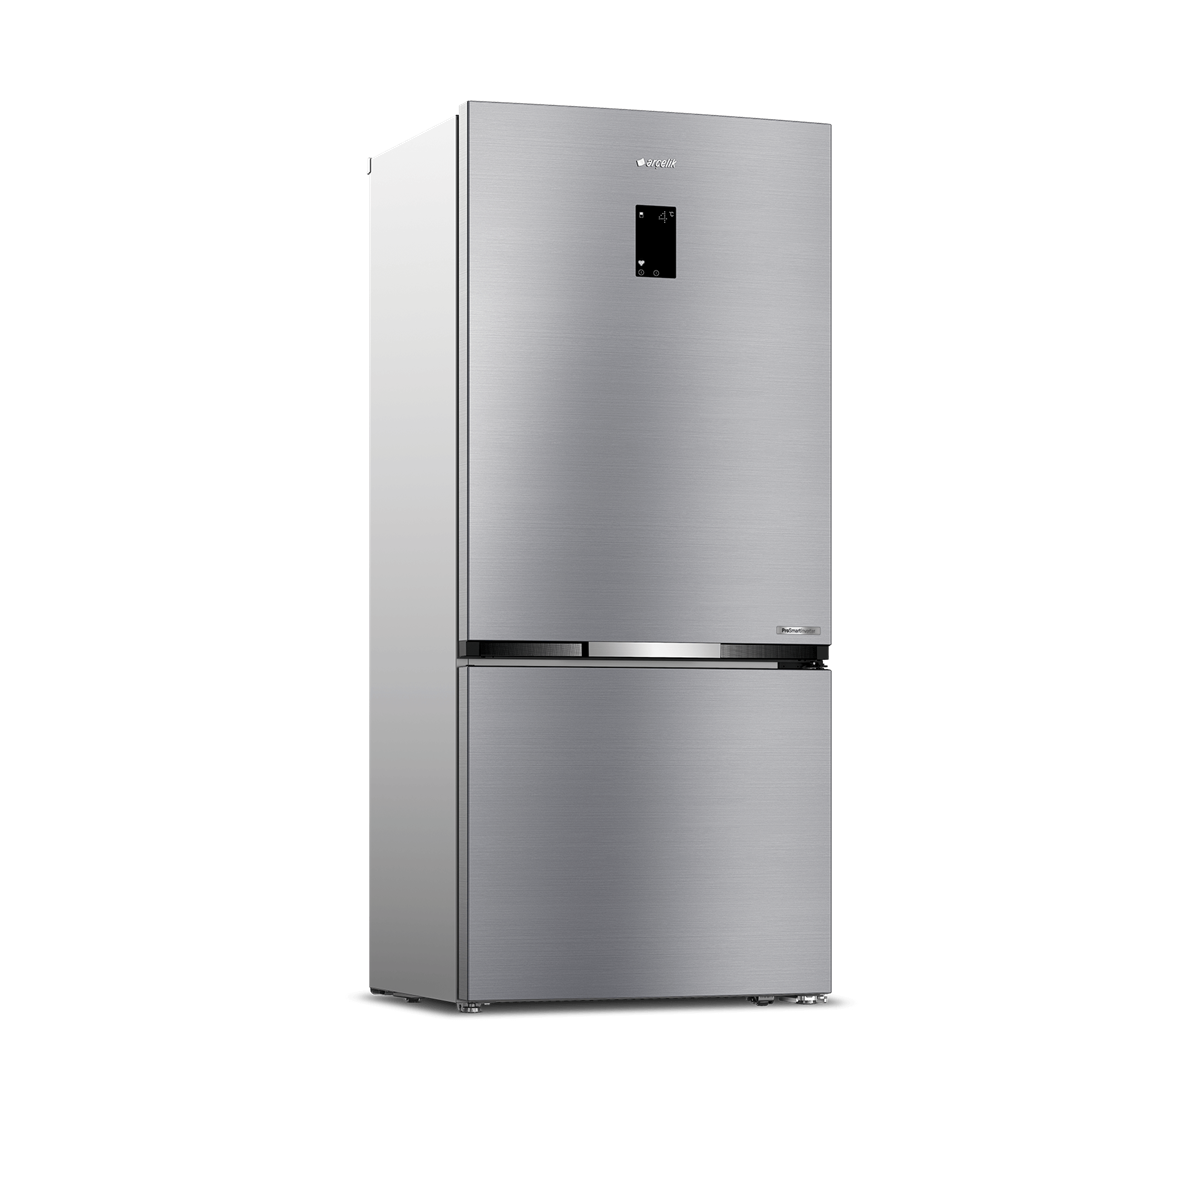 Arçelik 283721 EI No Frost Buzdolabı - Arçelik Nofrost Buzdolabı Fiyatları